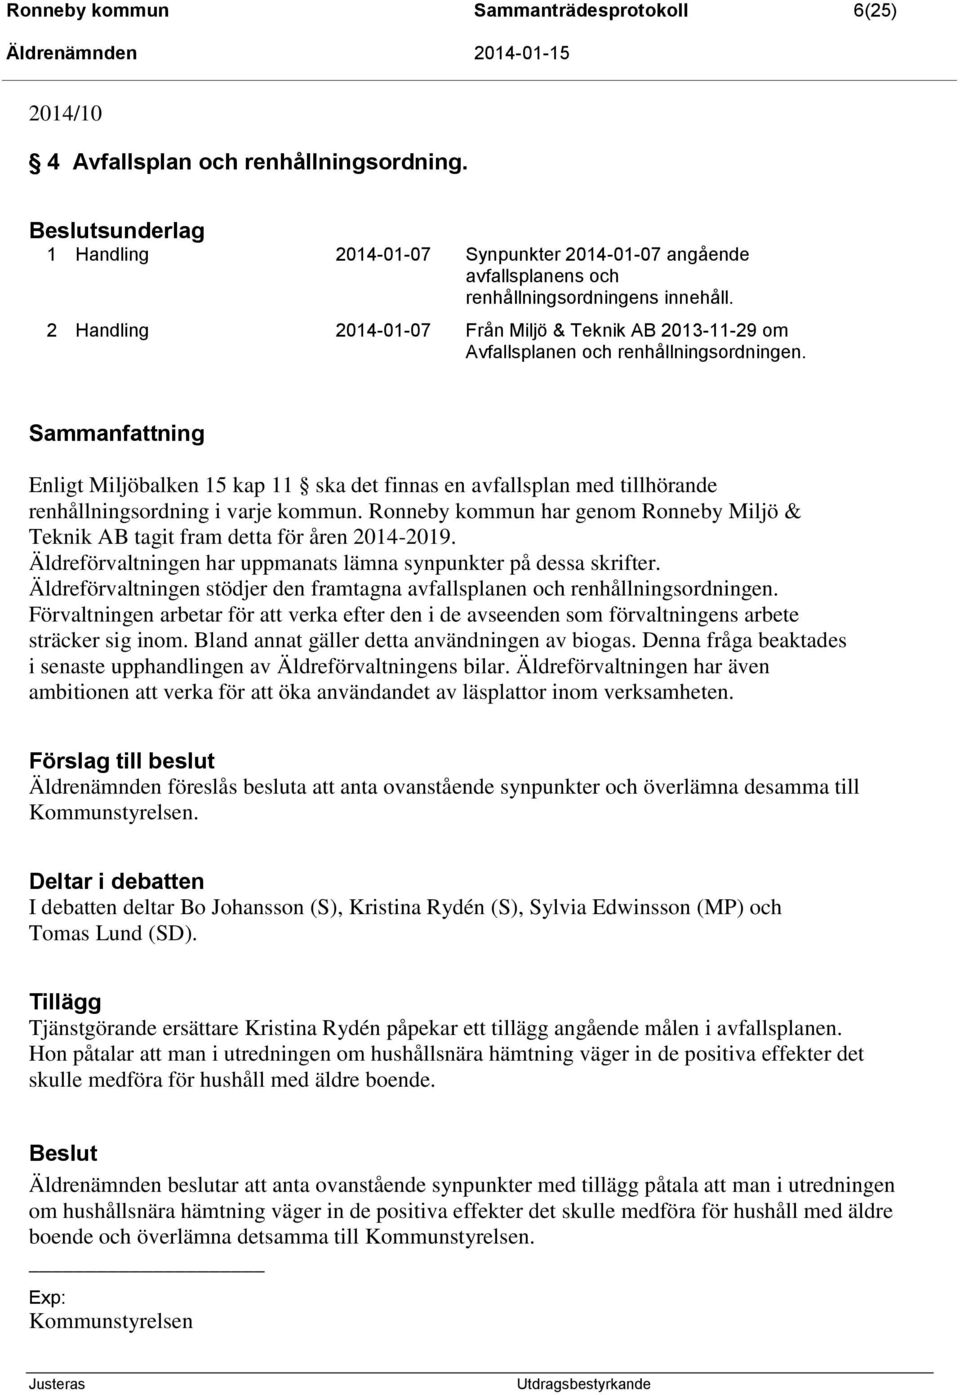 2 Handling 2014-01-07 Från Miljö & Teknik AB 2013-11-29 om Avfallsplanen och renhållningsordningen.